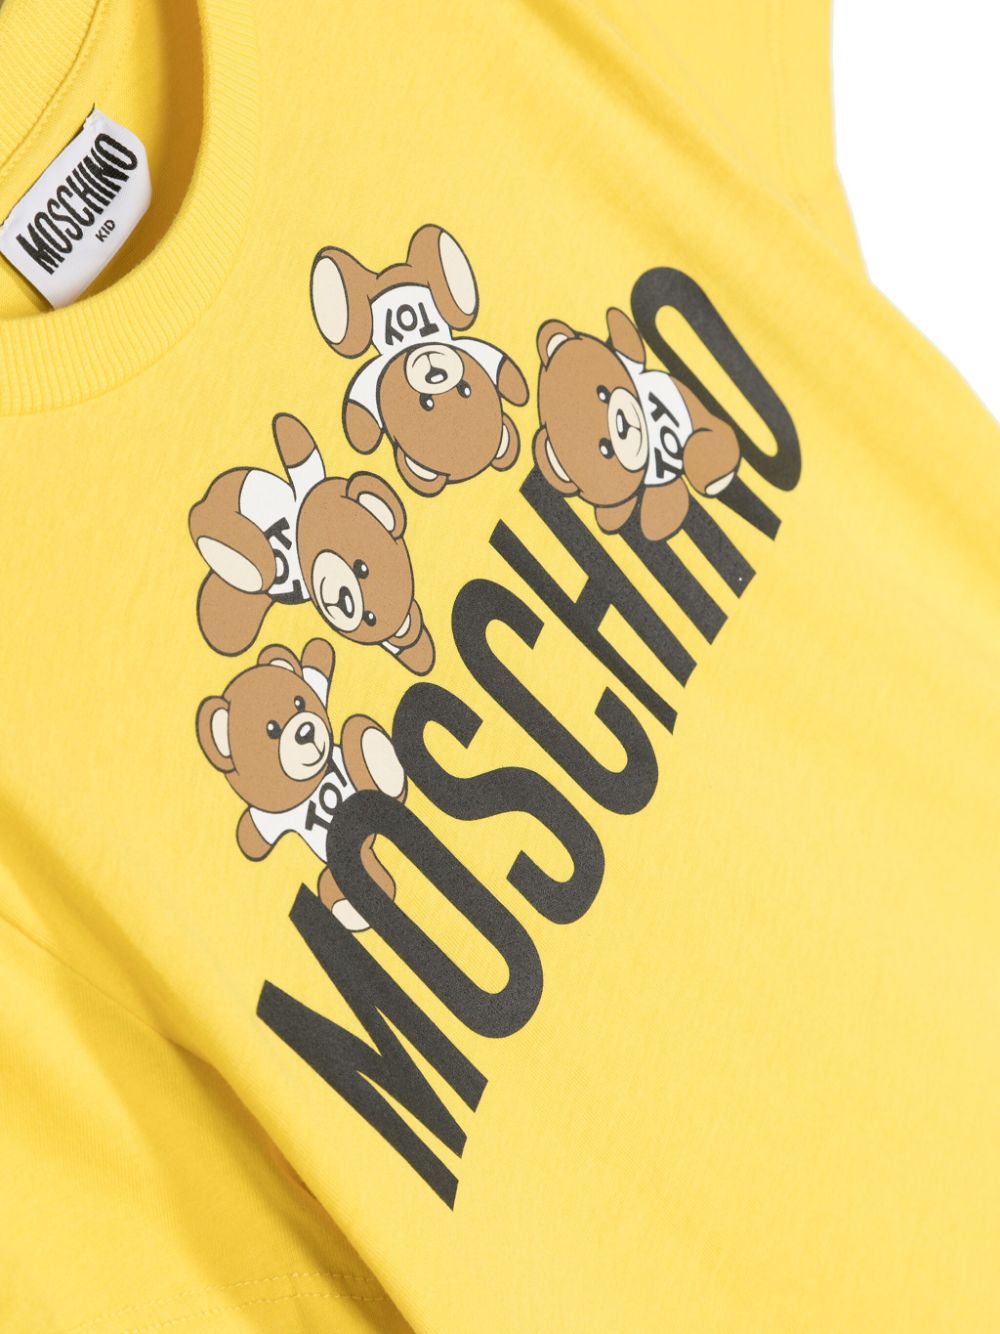 T-shirt gialla per bambini con stampa